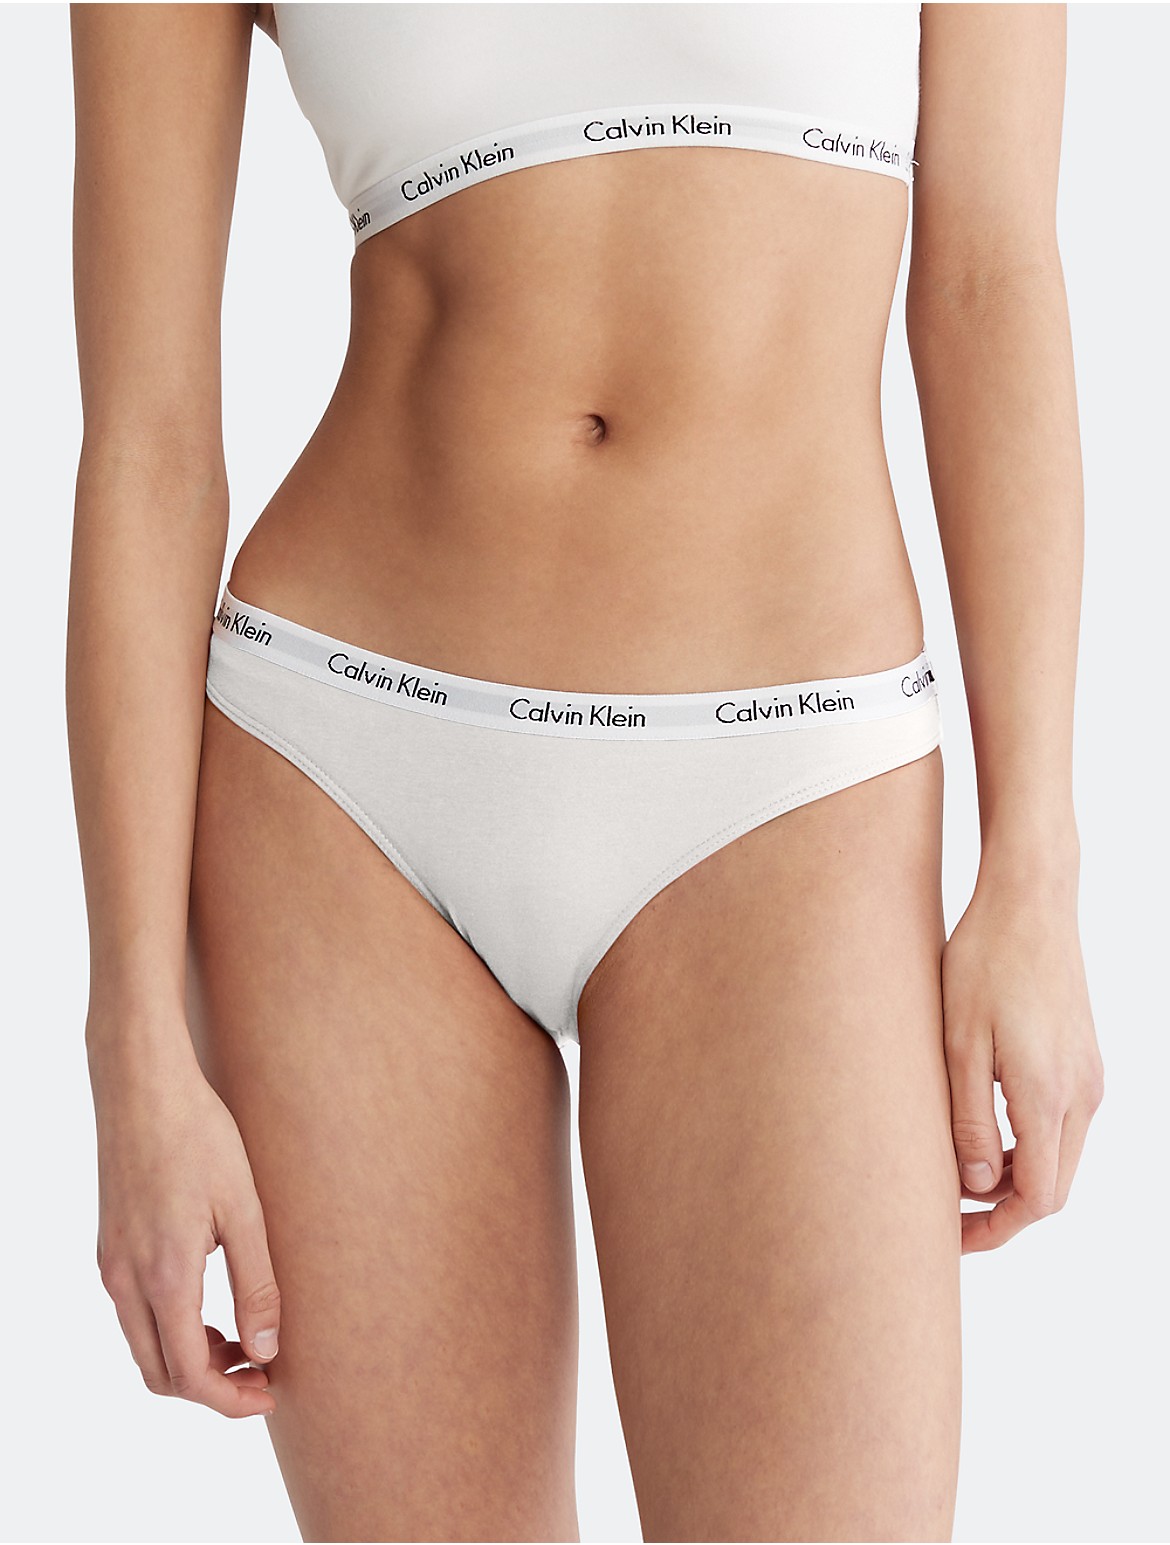 Calvin Klein Women's Carousel Logo Cotton Bikini - White - XS